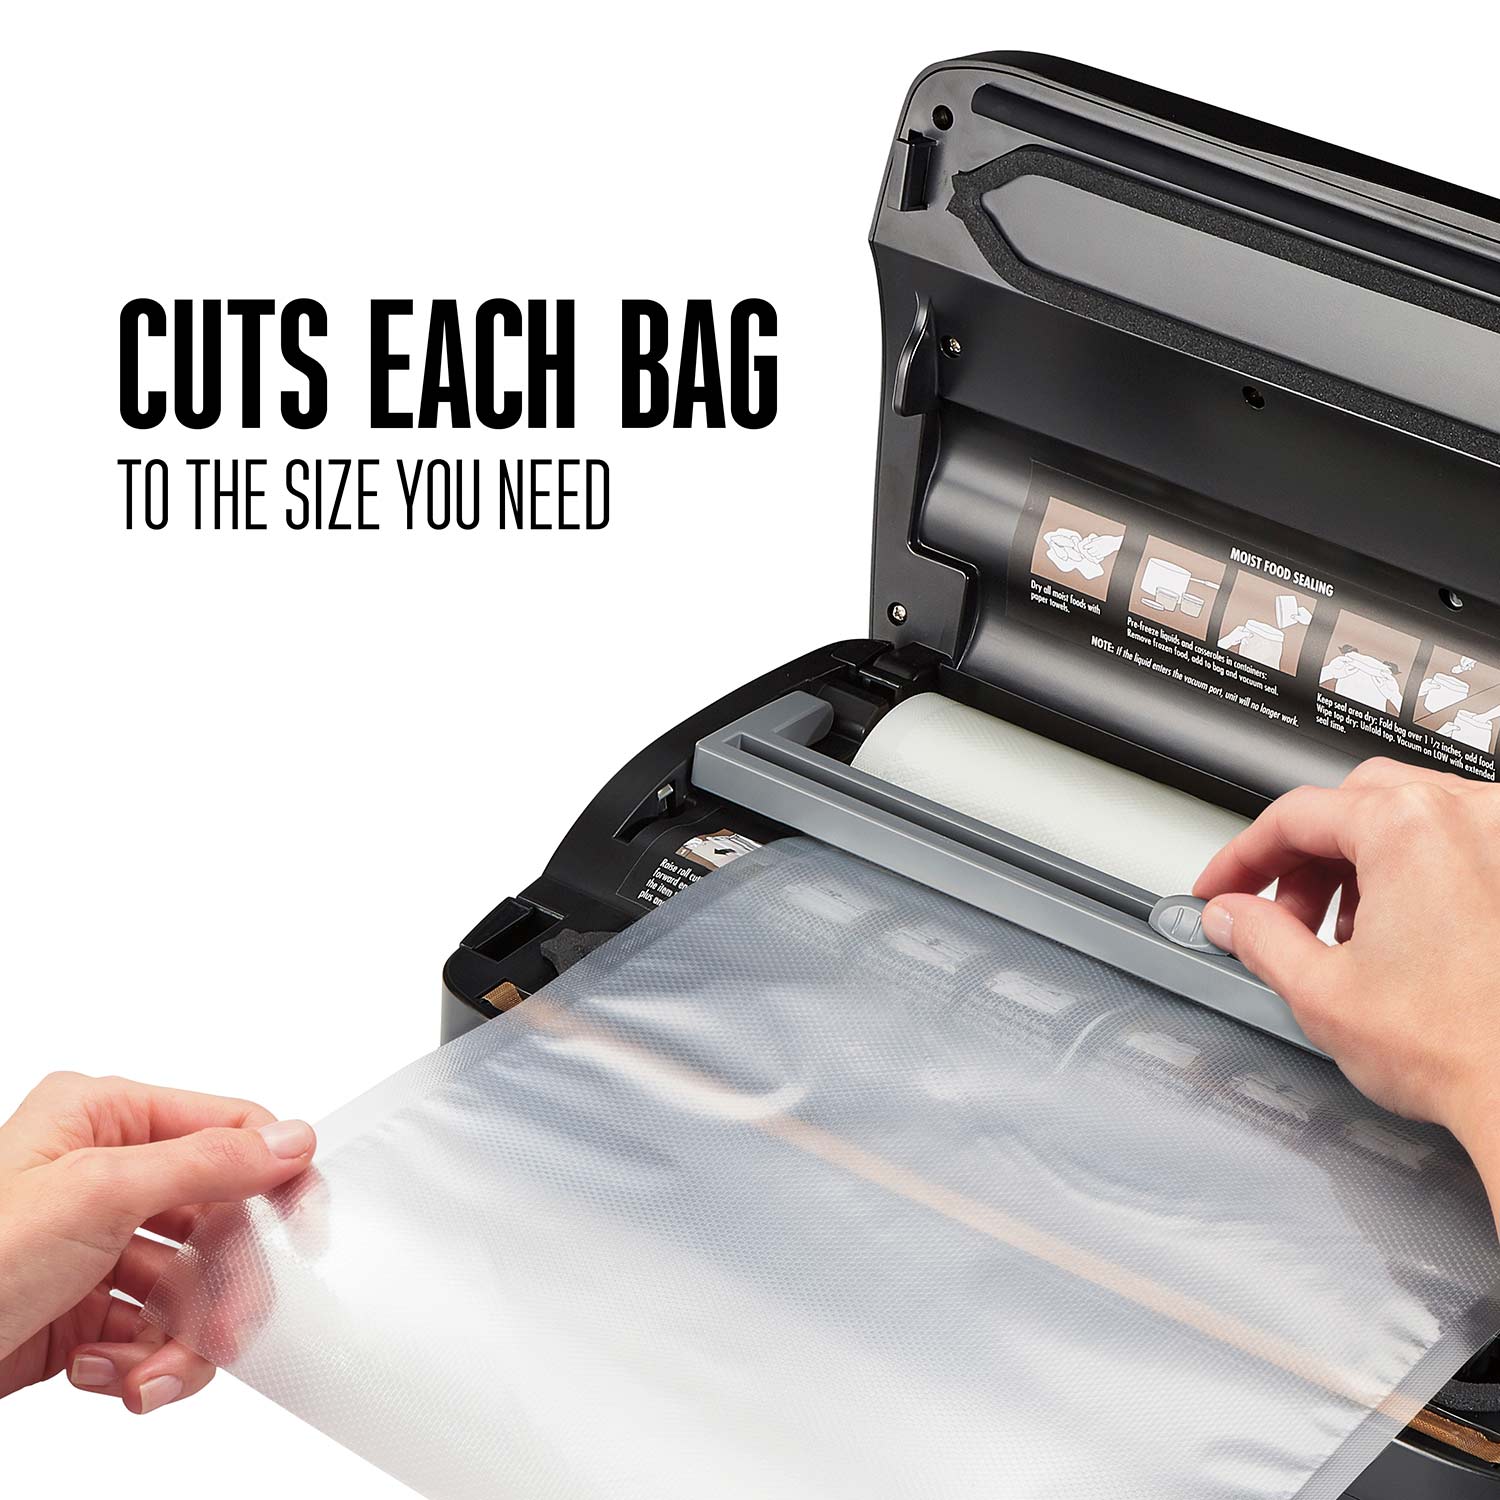 Weston® Vacuum Sealer Bags, 15 in x 18 in, 100 Pre-Cut Bags - 30-0105-W